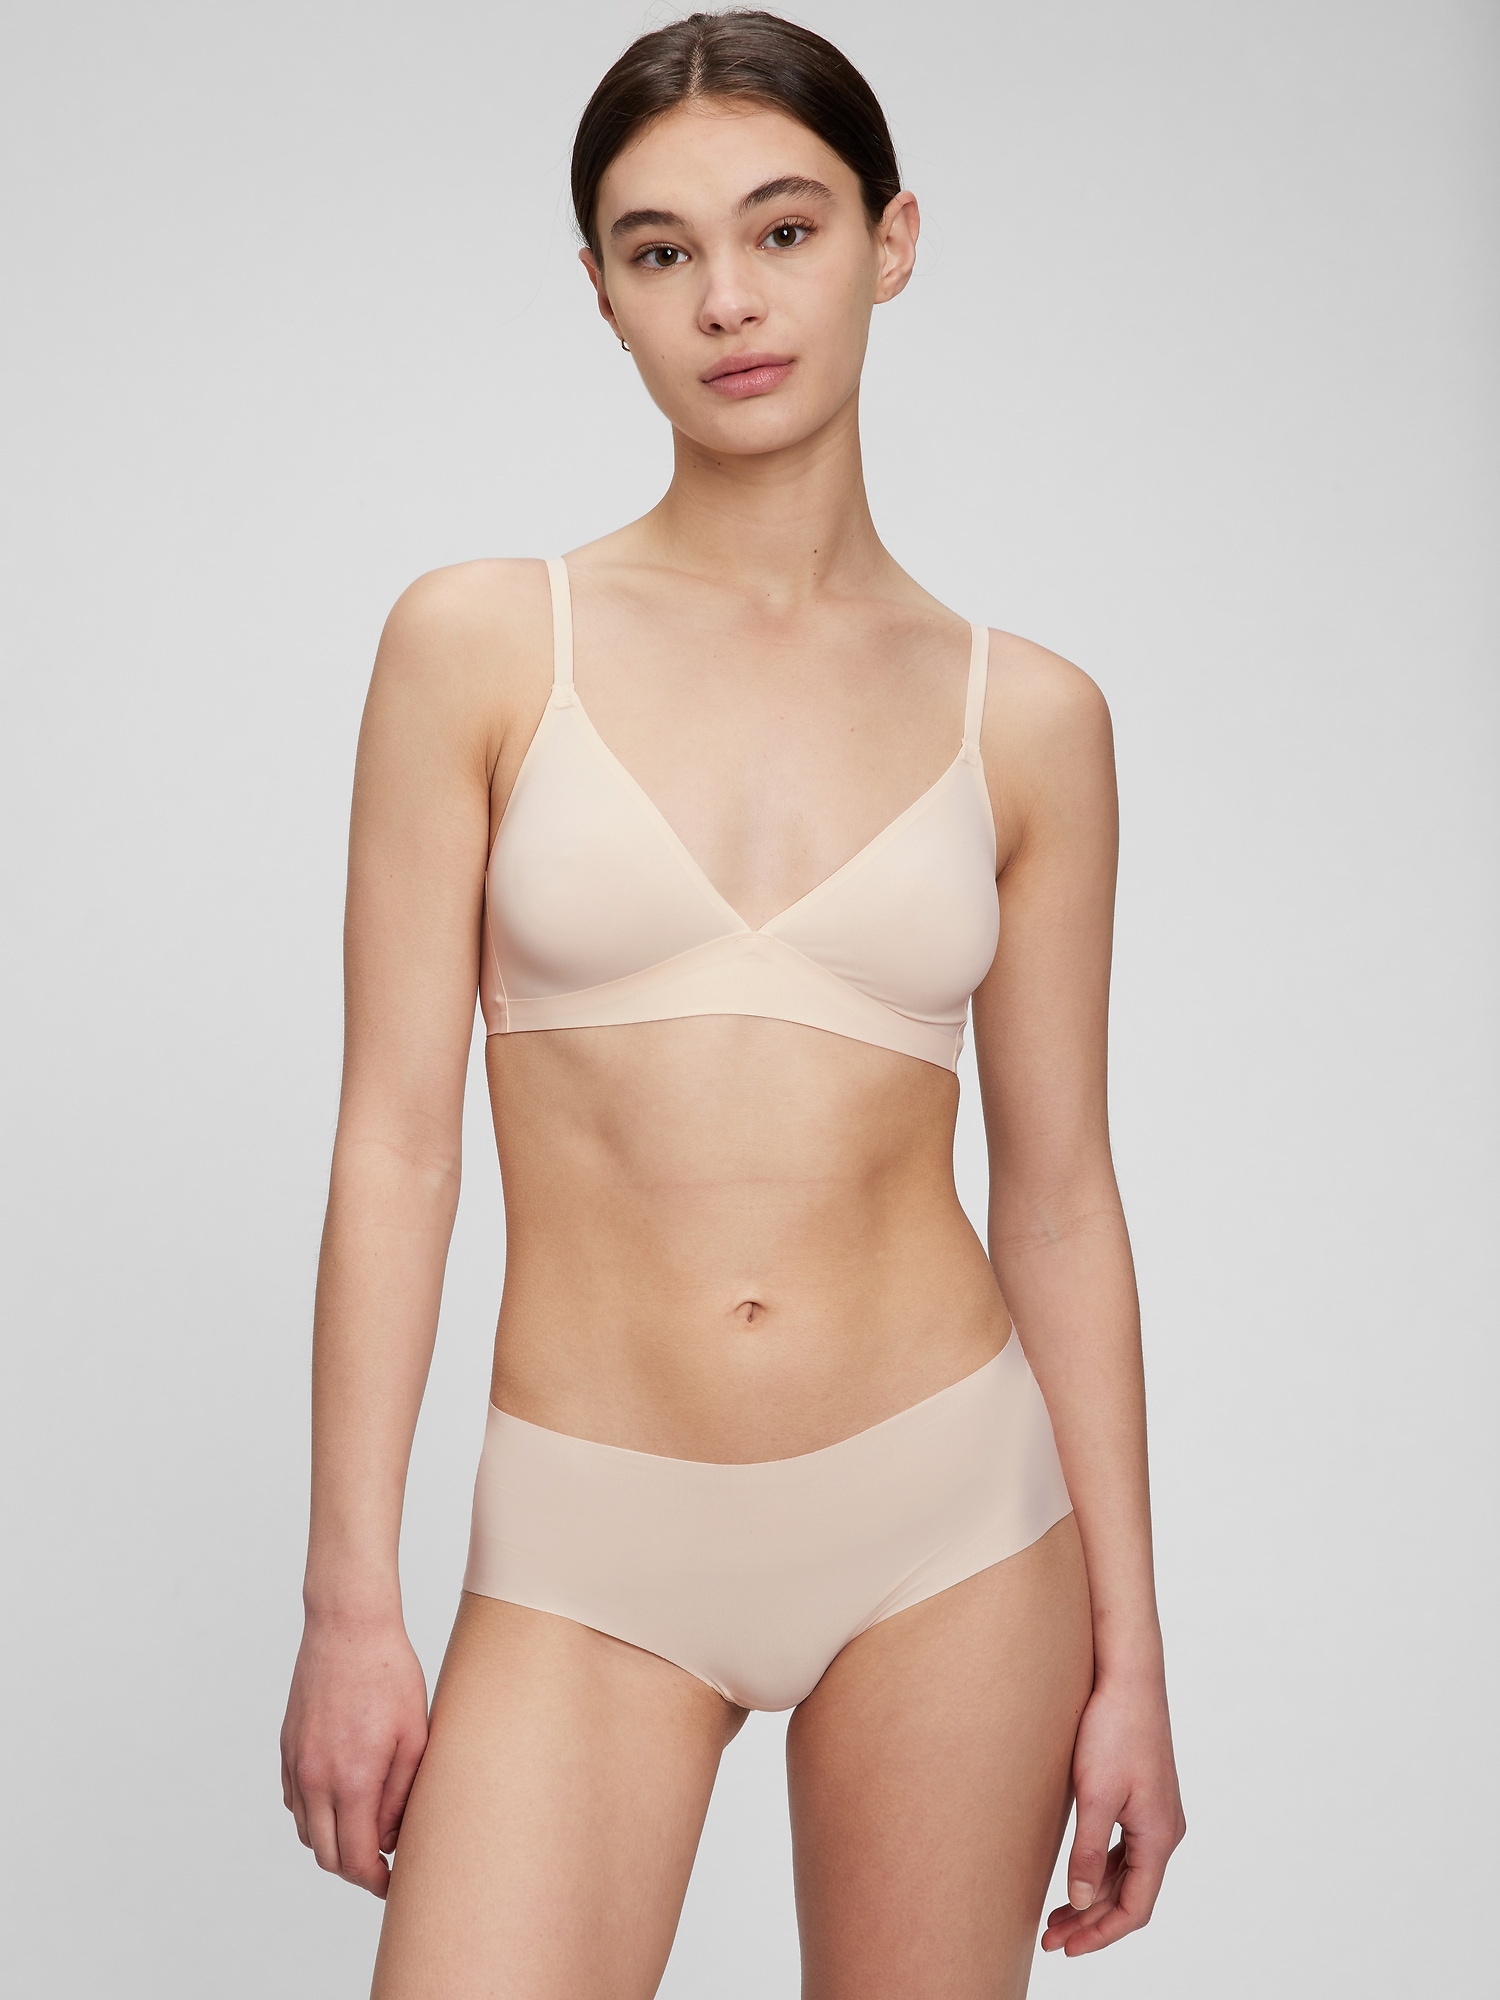 Calvin Klein Underwear Bralette Bra in Nude